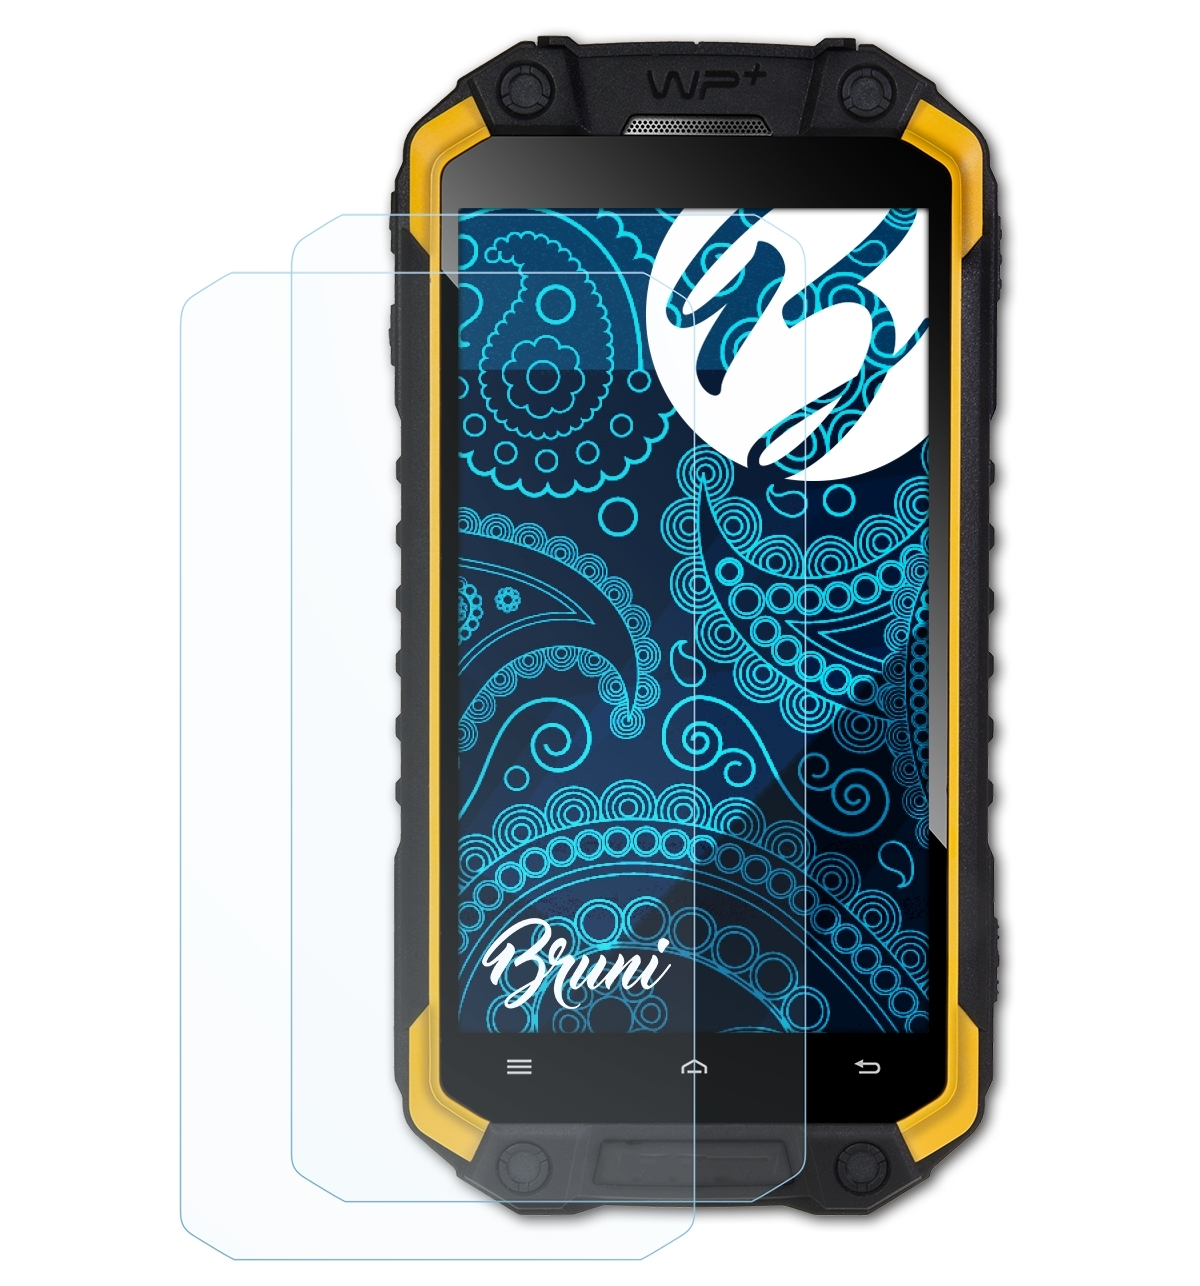 BRUNI 2x Basics-Clear Schutzfolie(für Evolveo Q9) StrongPhone